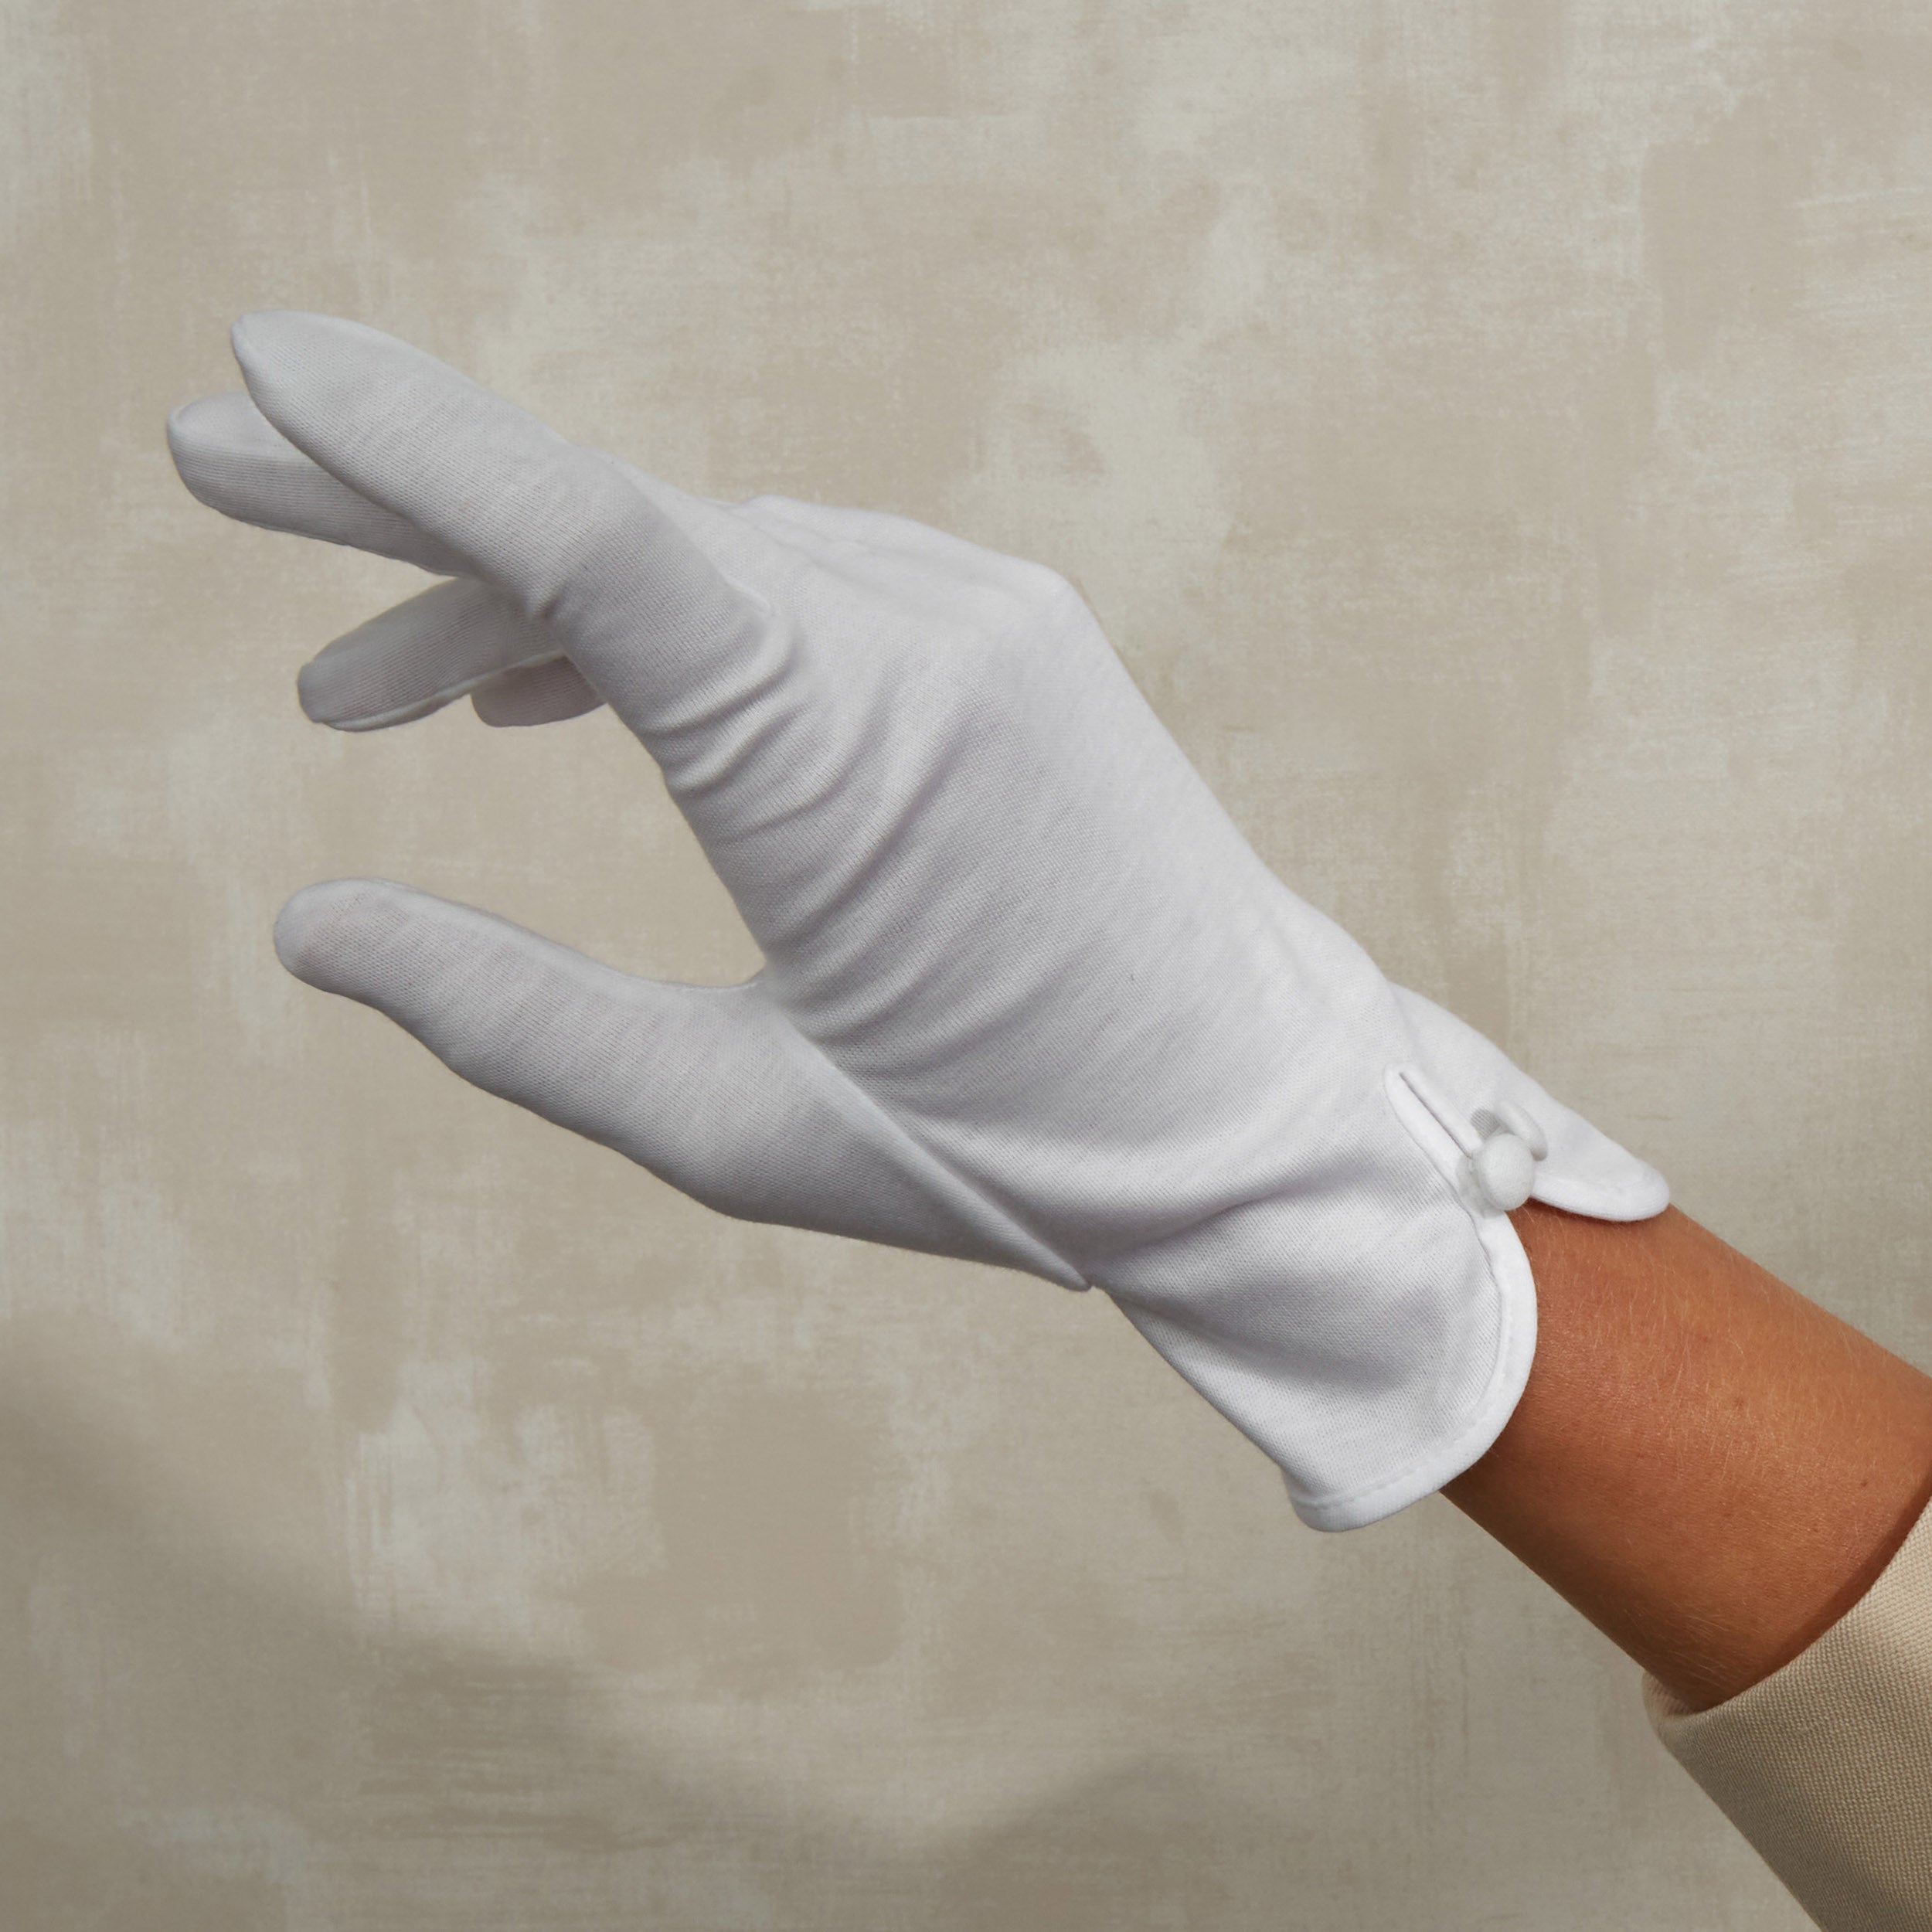 Cornelia James - White Cotton Day Gloves - Isla - Size Large (8½) - Handmade Cotton Gloves by Cornelia James